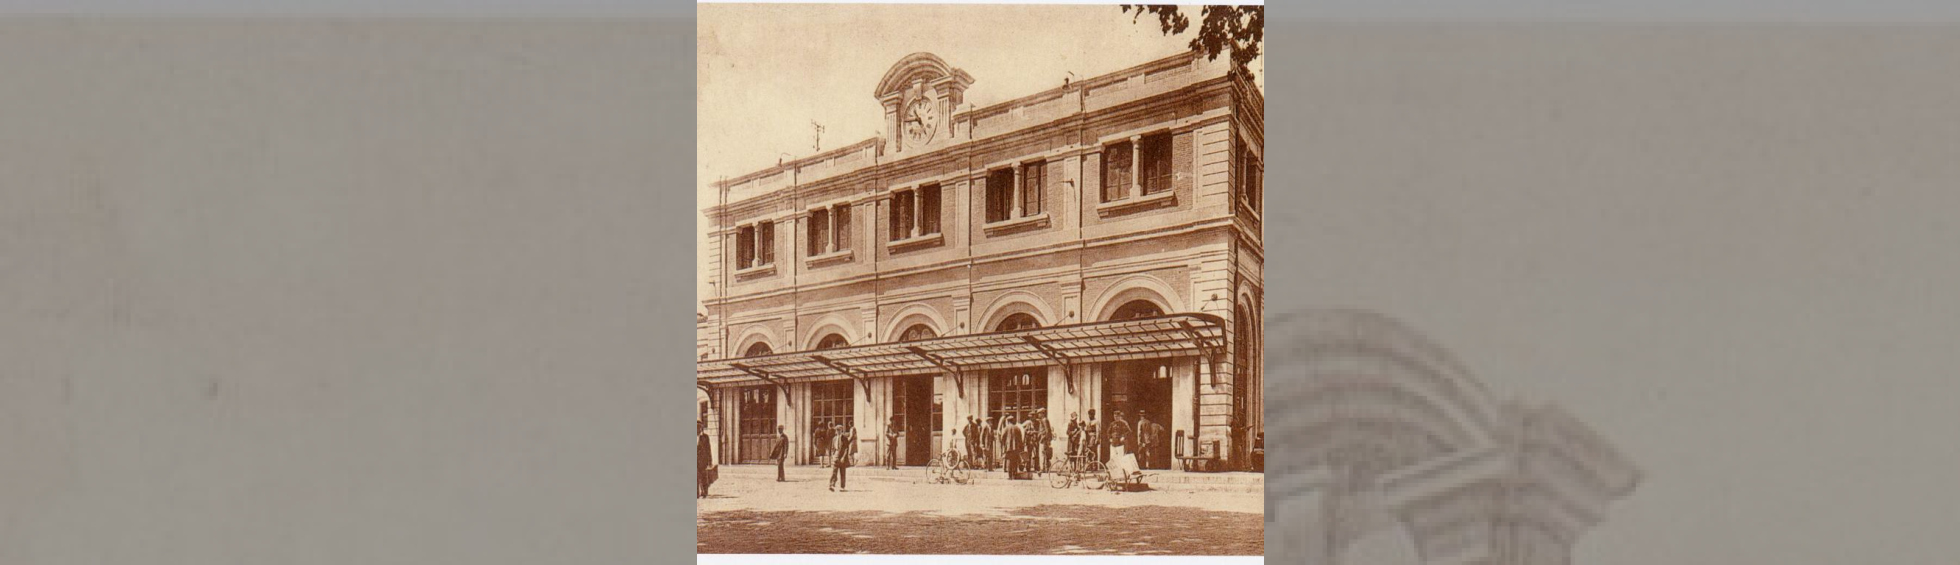 La gare historique en 1926